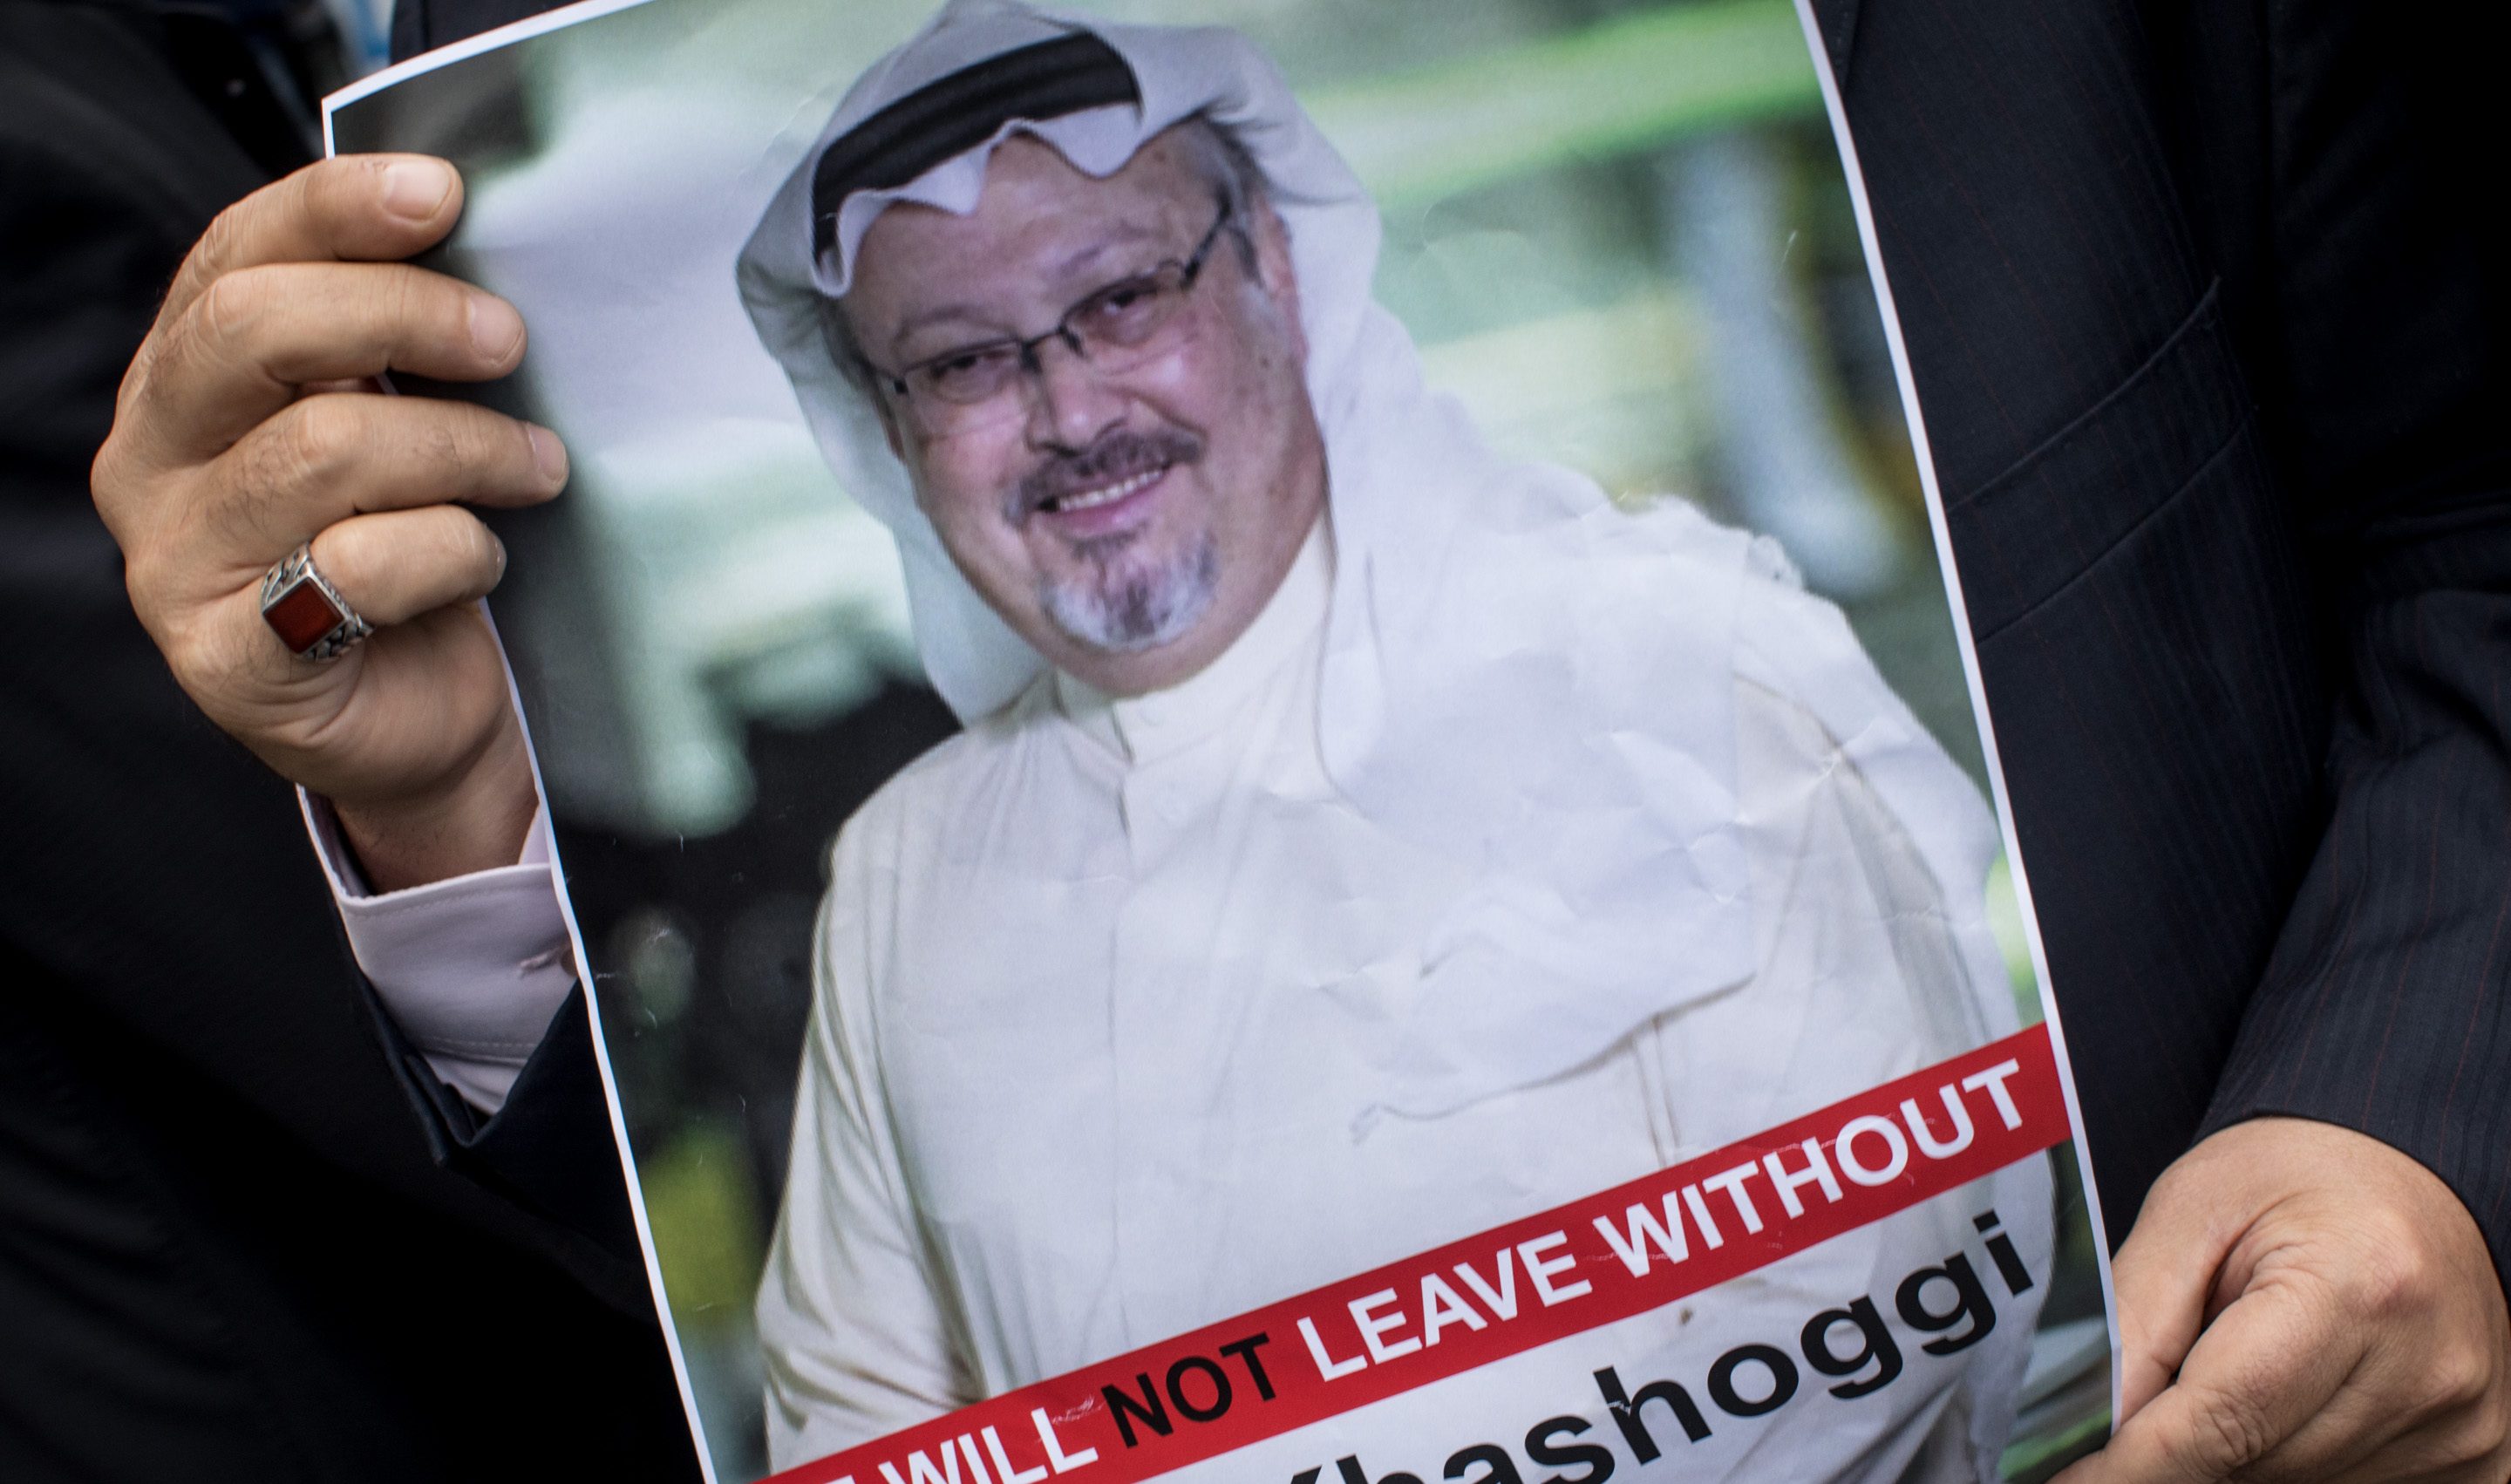 У Саудівській Аравії засудили до страти 5 обвинувачених у вбивстві журналіста Хашоггі